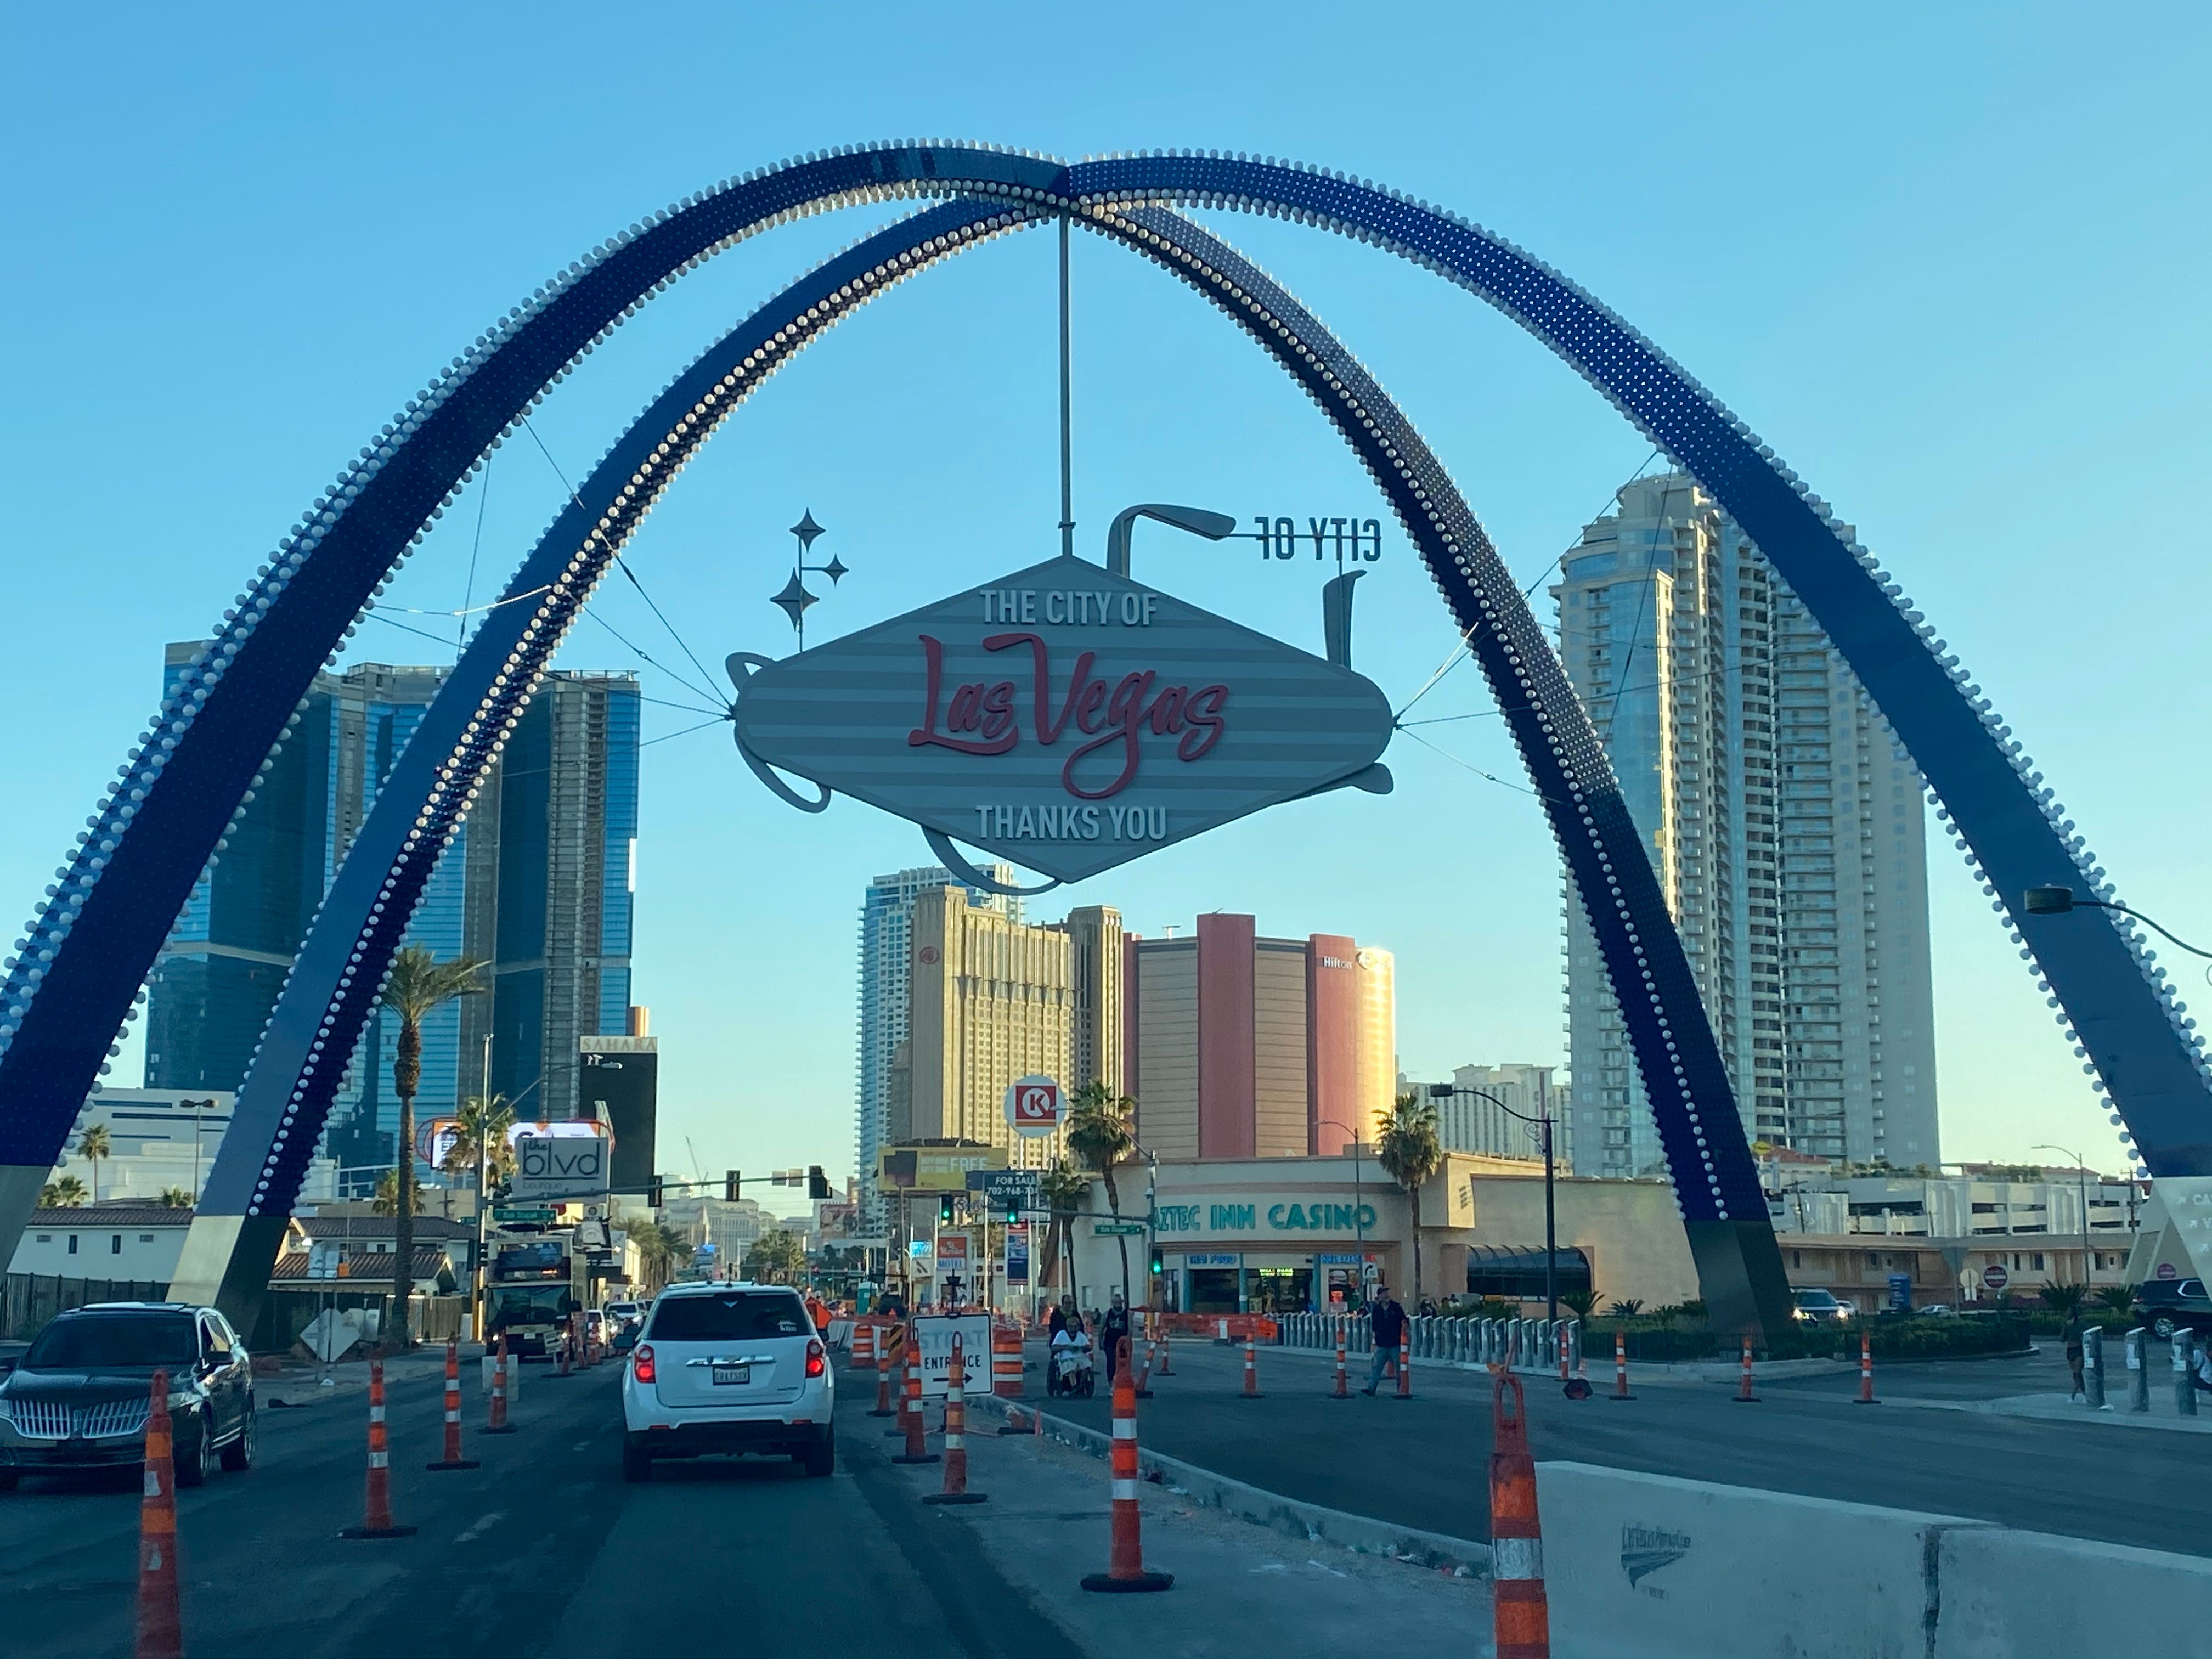 Ein Banner aus Las Vegas hängt über einer Straße, auf der auf mehreren Fahrspuren Bauarbeiten durchgeführt werden.